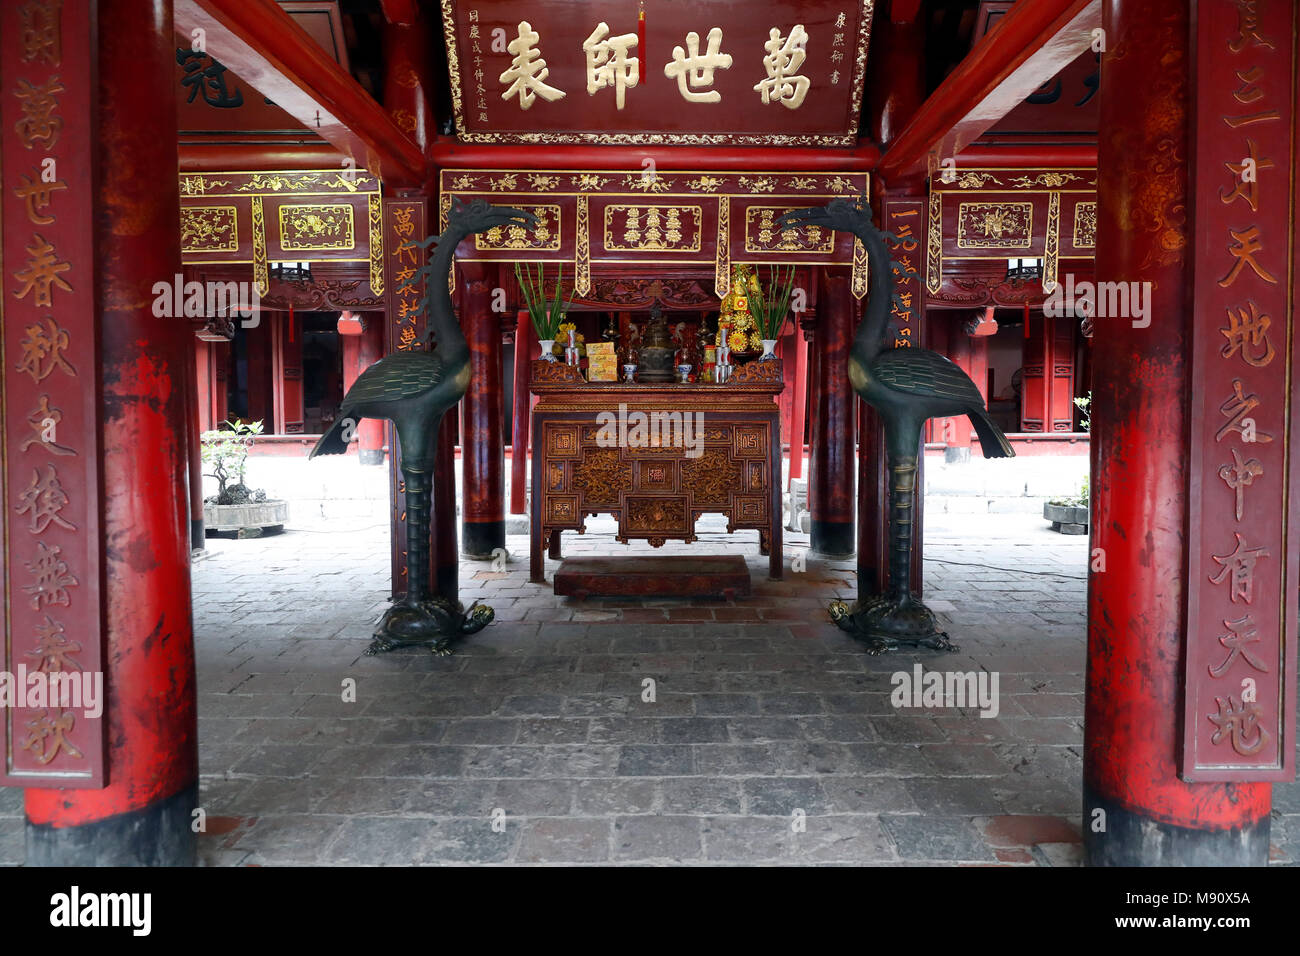 Il Tempio della Letteratura è tempio Confuciana che in passato era un centro di apprendimento ad Hanoi. Altare di Confucio. Hanoi. Il Vietnam. Foto Stock